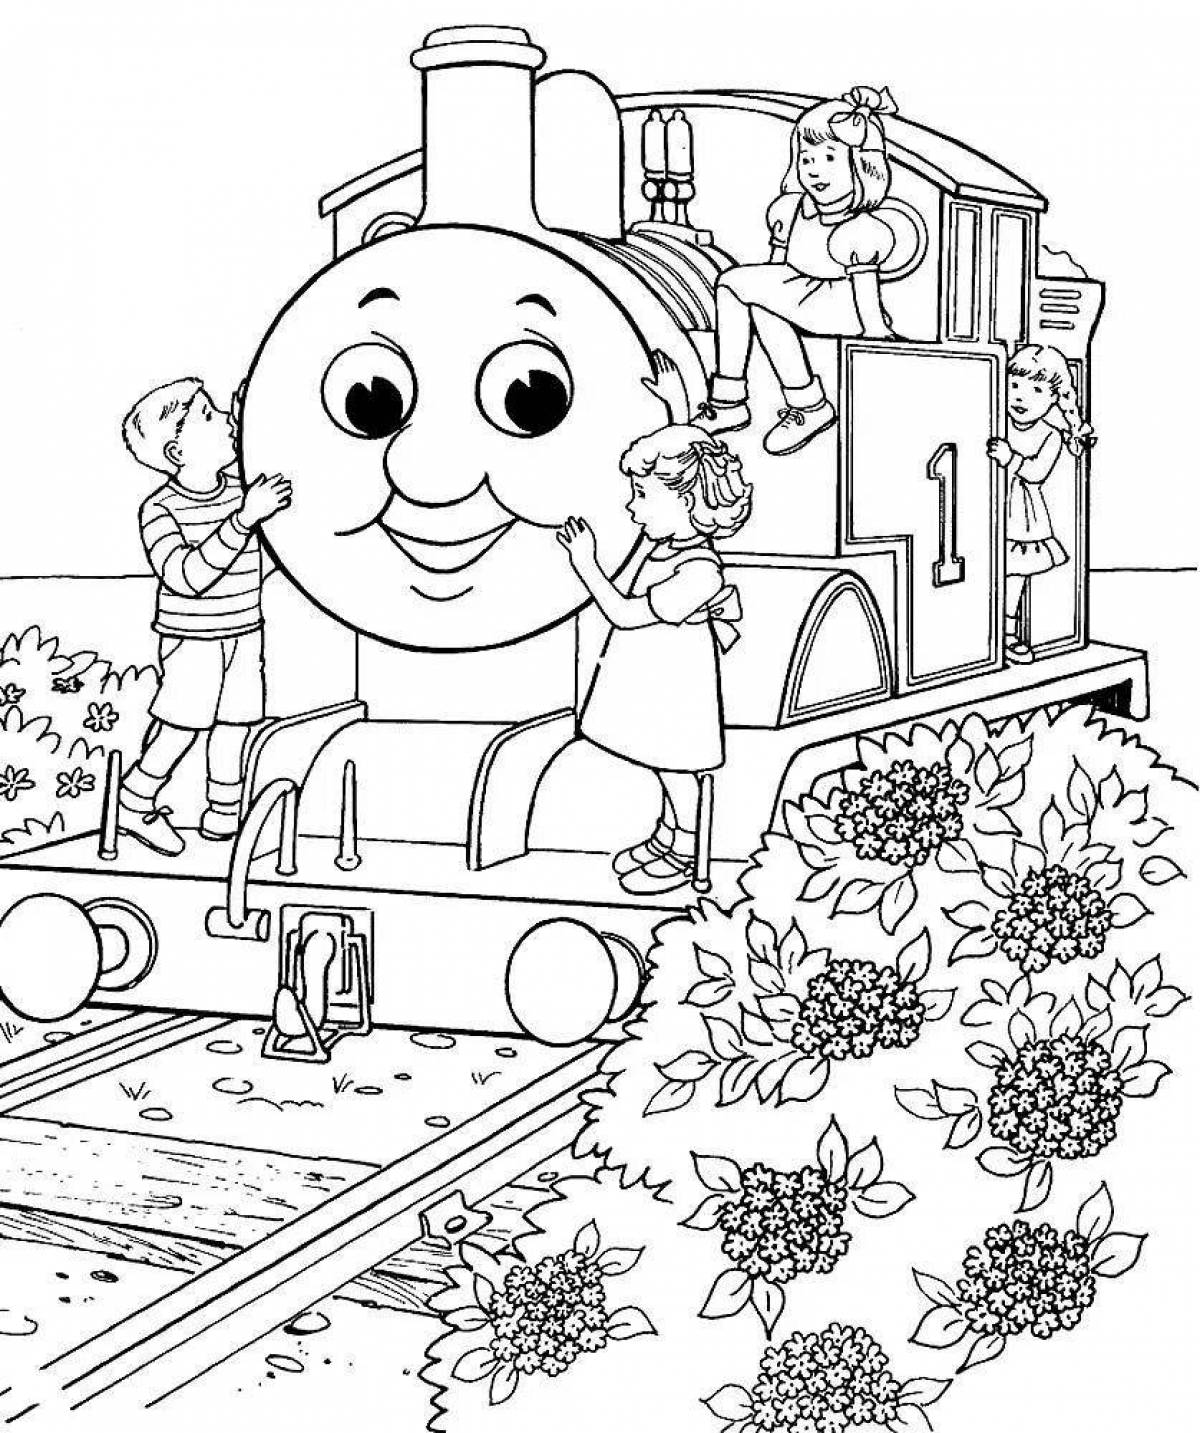 Веселая раскраска поезда томаса